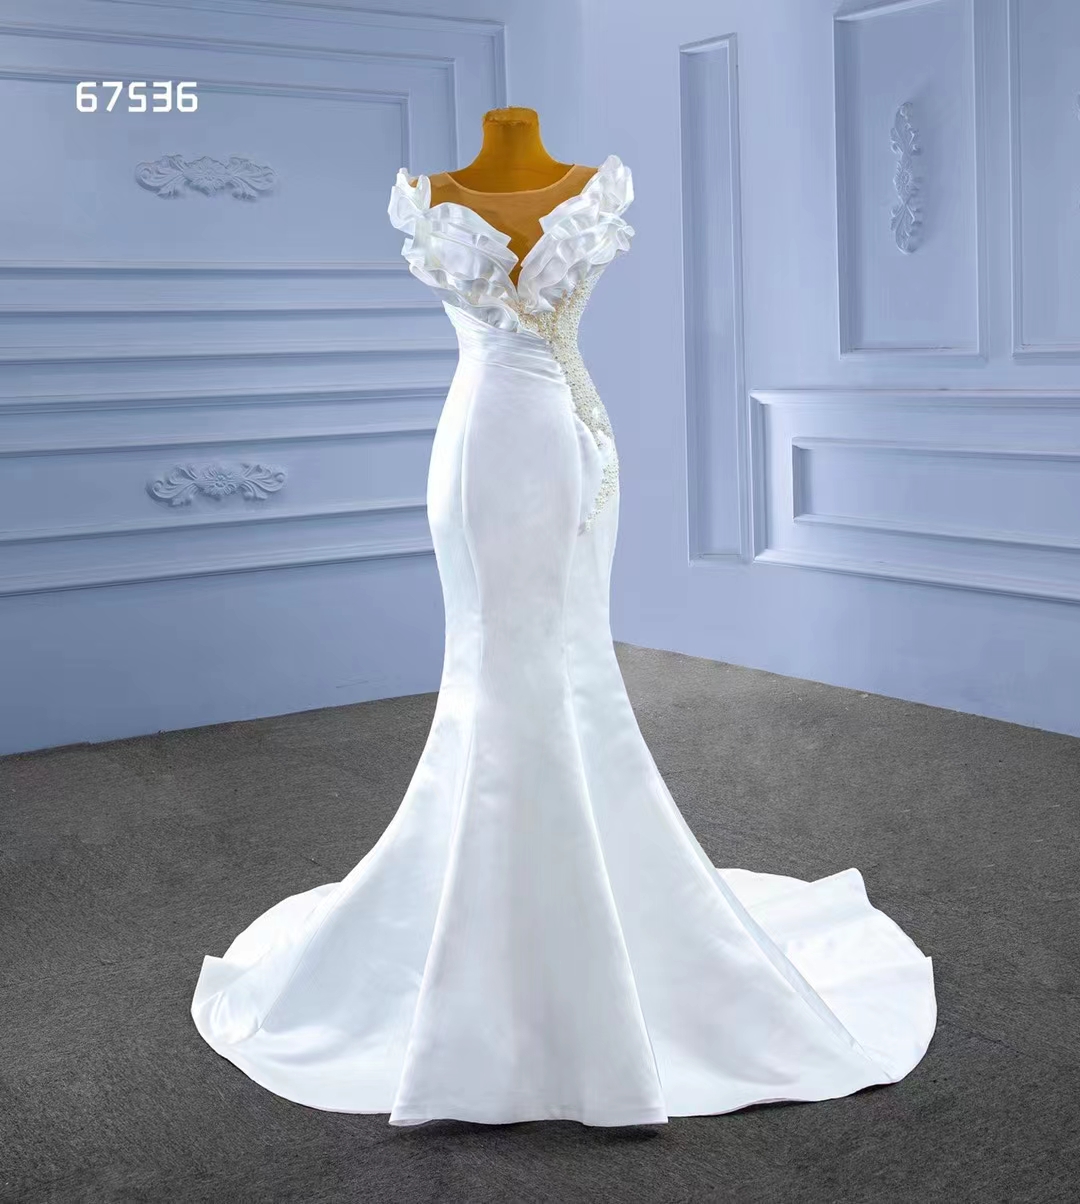 Sexy weicher weißer Satin-Hochzeits-Meerjungfrau-Kleid-Trend-Entwurf mit teilweiser Perlenstickerei SM67536